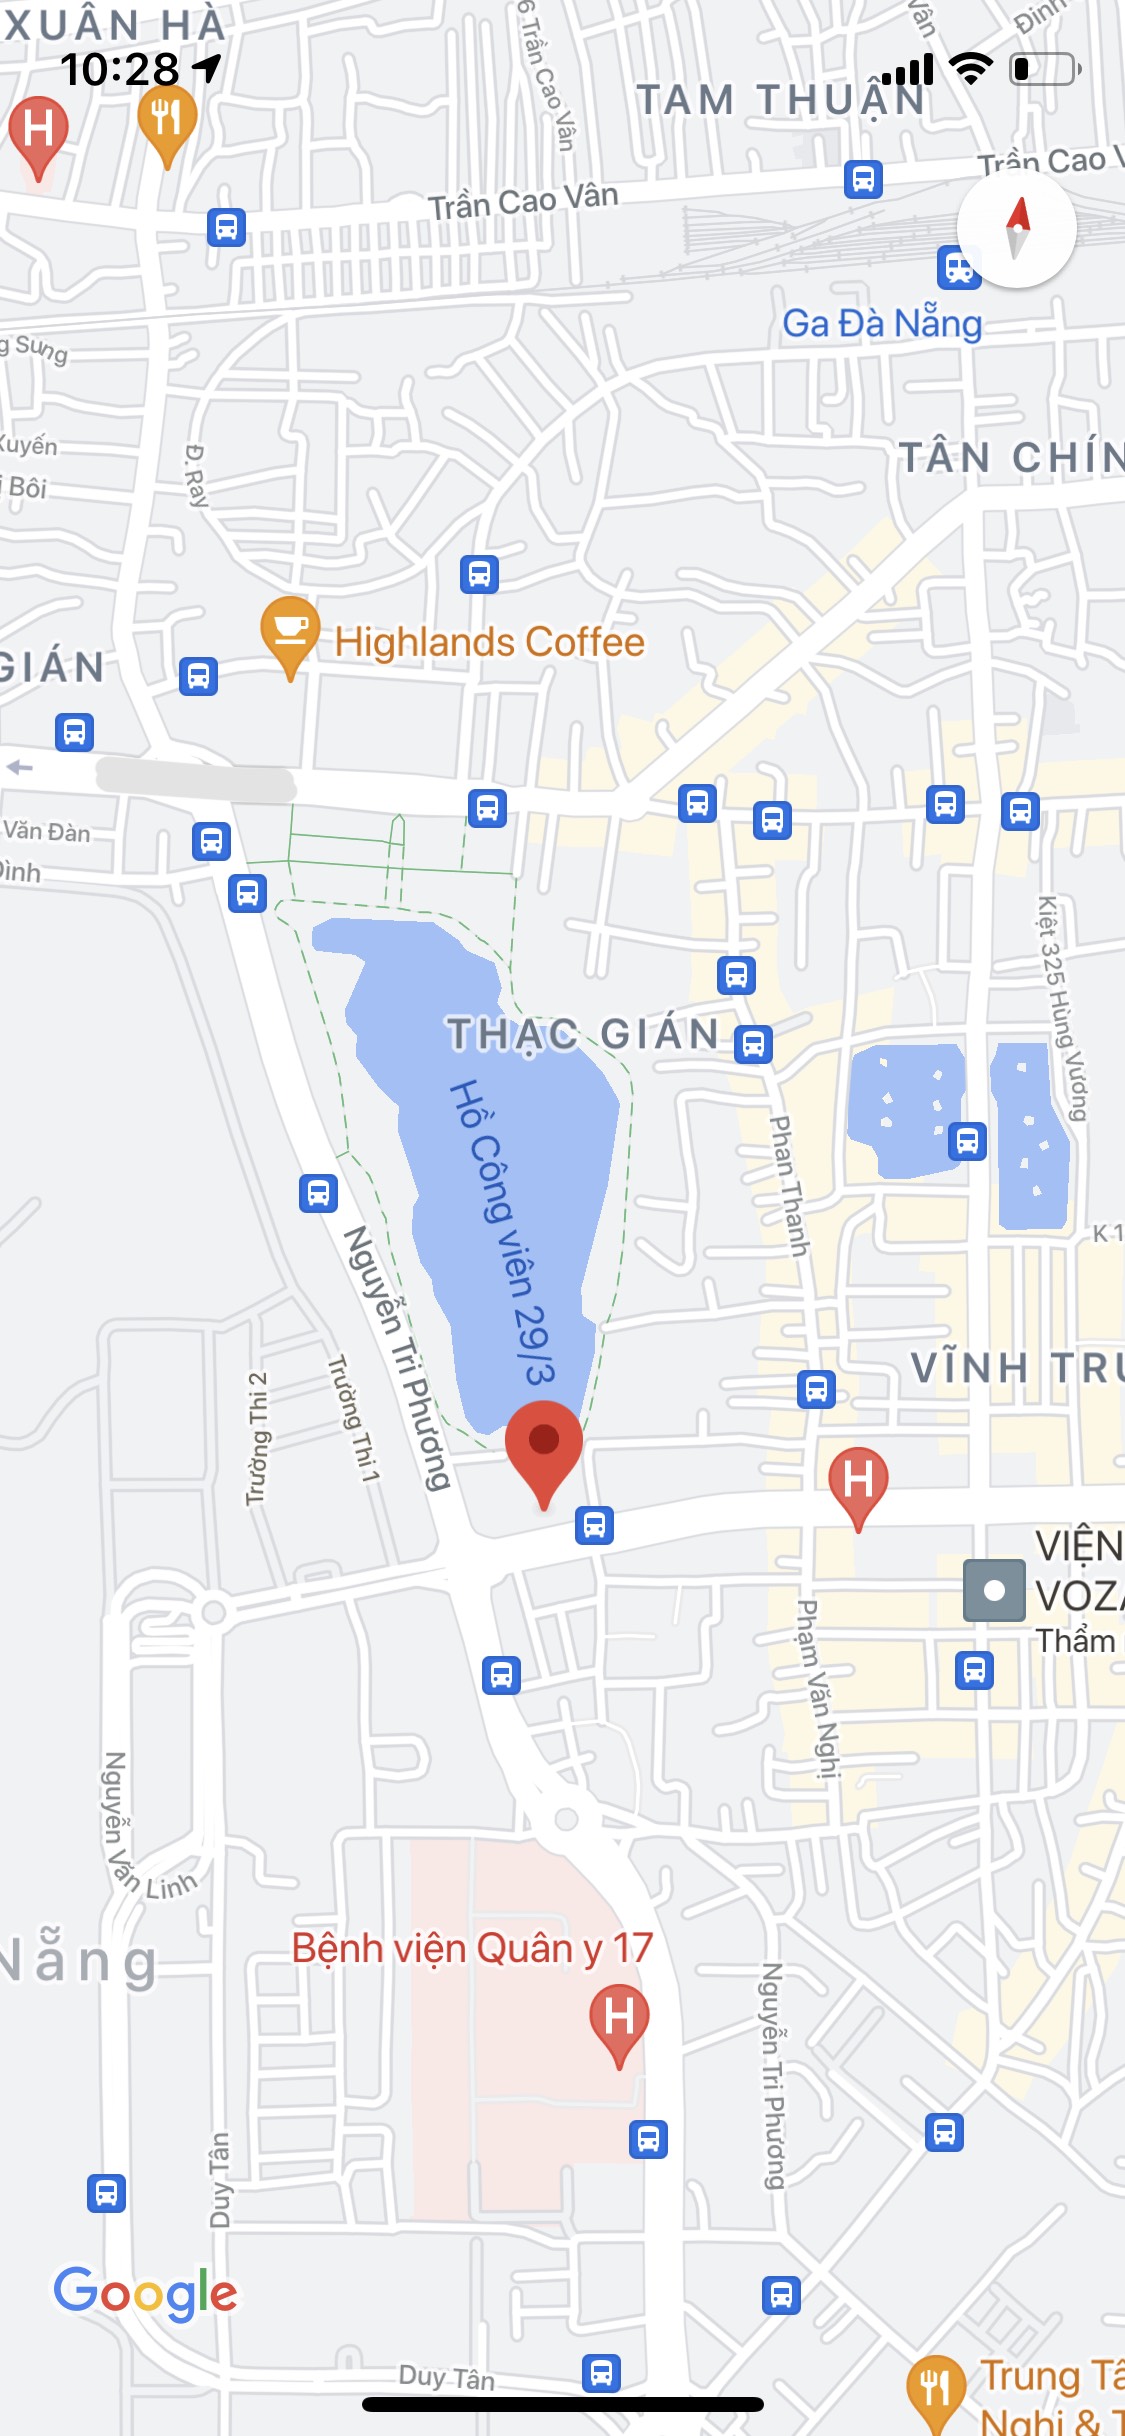 Bán lô đất mặt tiền đường Nguyễn Văn Linh, gần sân bay. DT: 275m2, ngang 10m. Giá: 270 triệu/m2